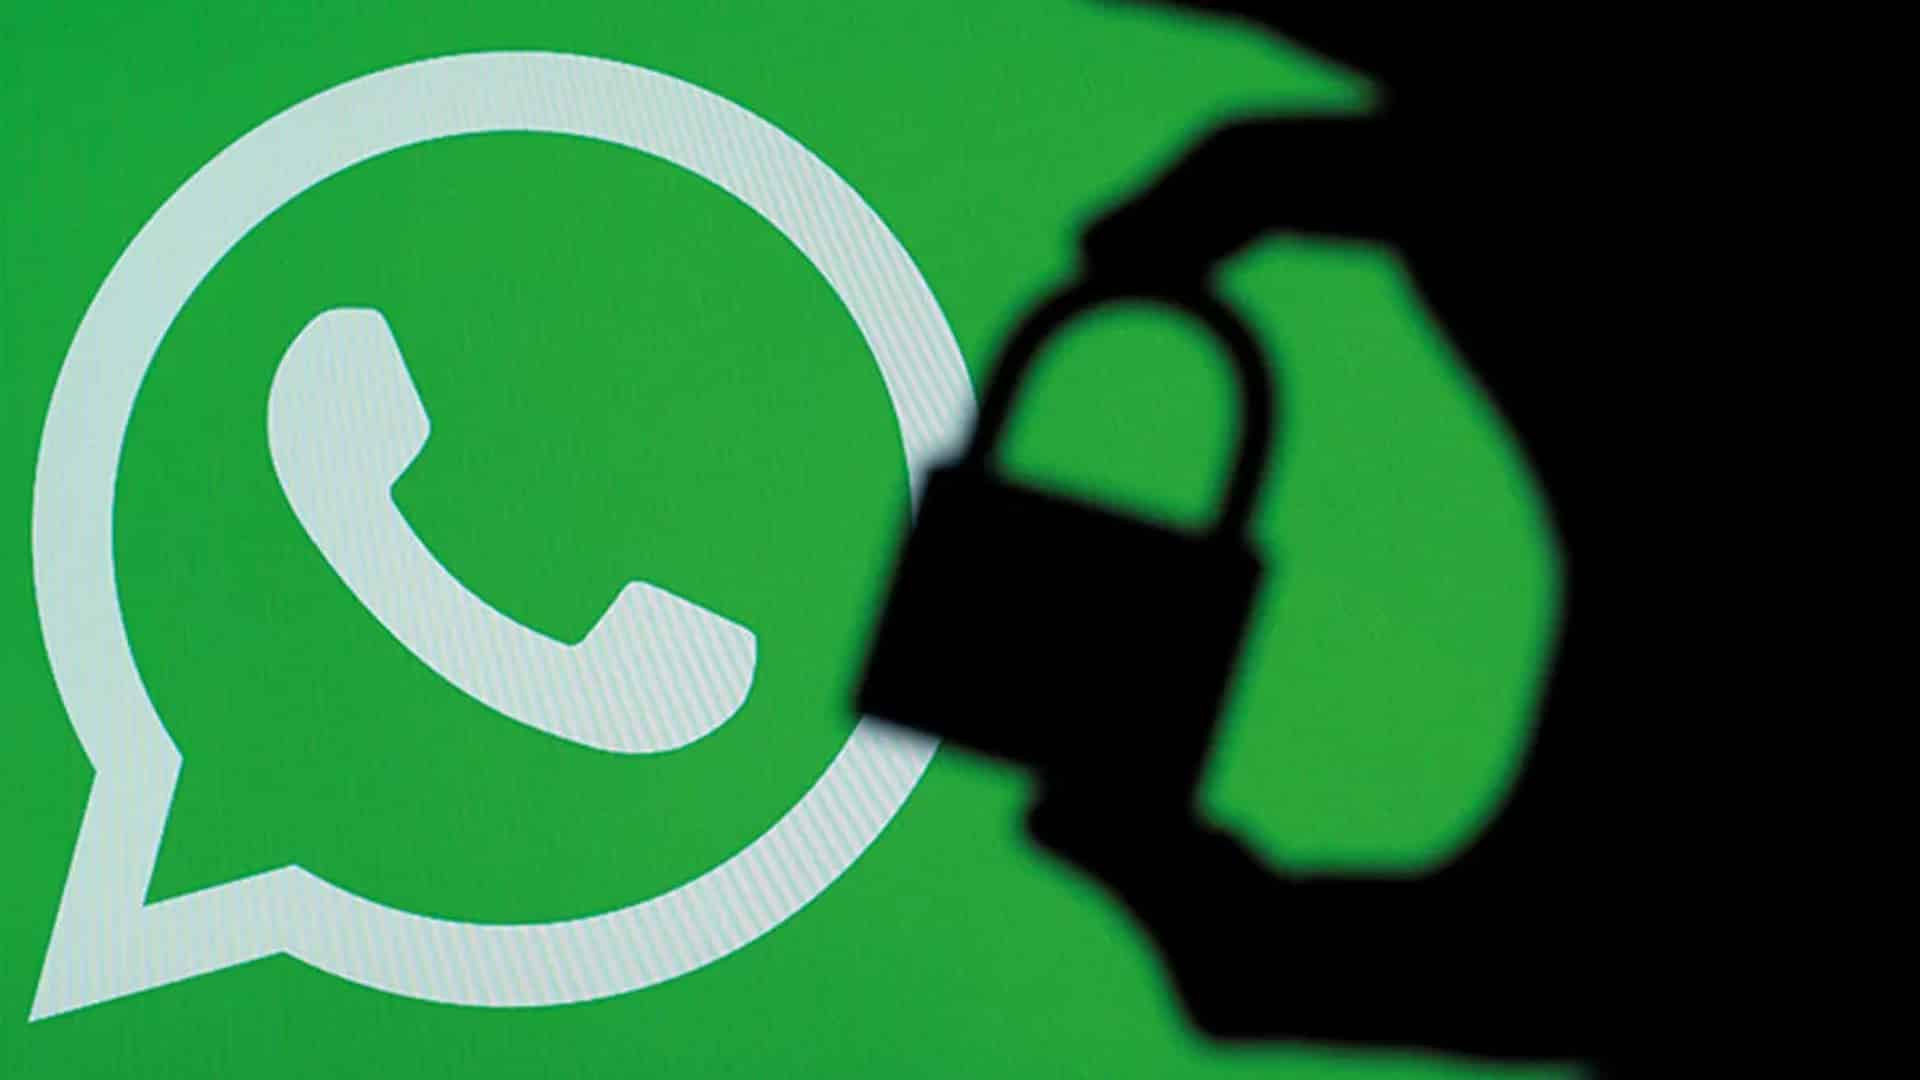 Gizlilik Politikaları Nedeniyle Kullanıcılarını Başka Uygulamalara Kaptıran WhatsApp, Şeffaflık Sözü Verdi